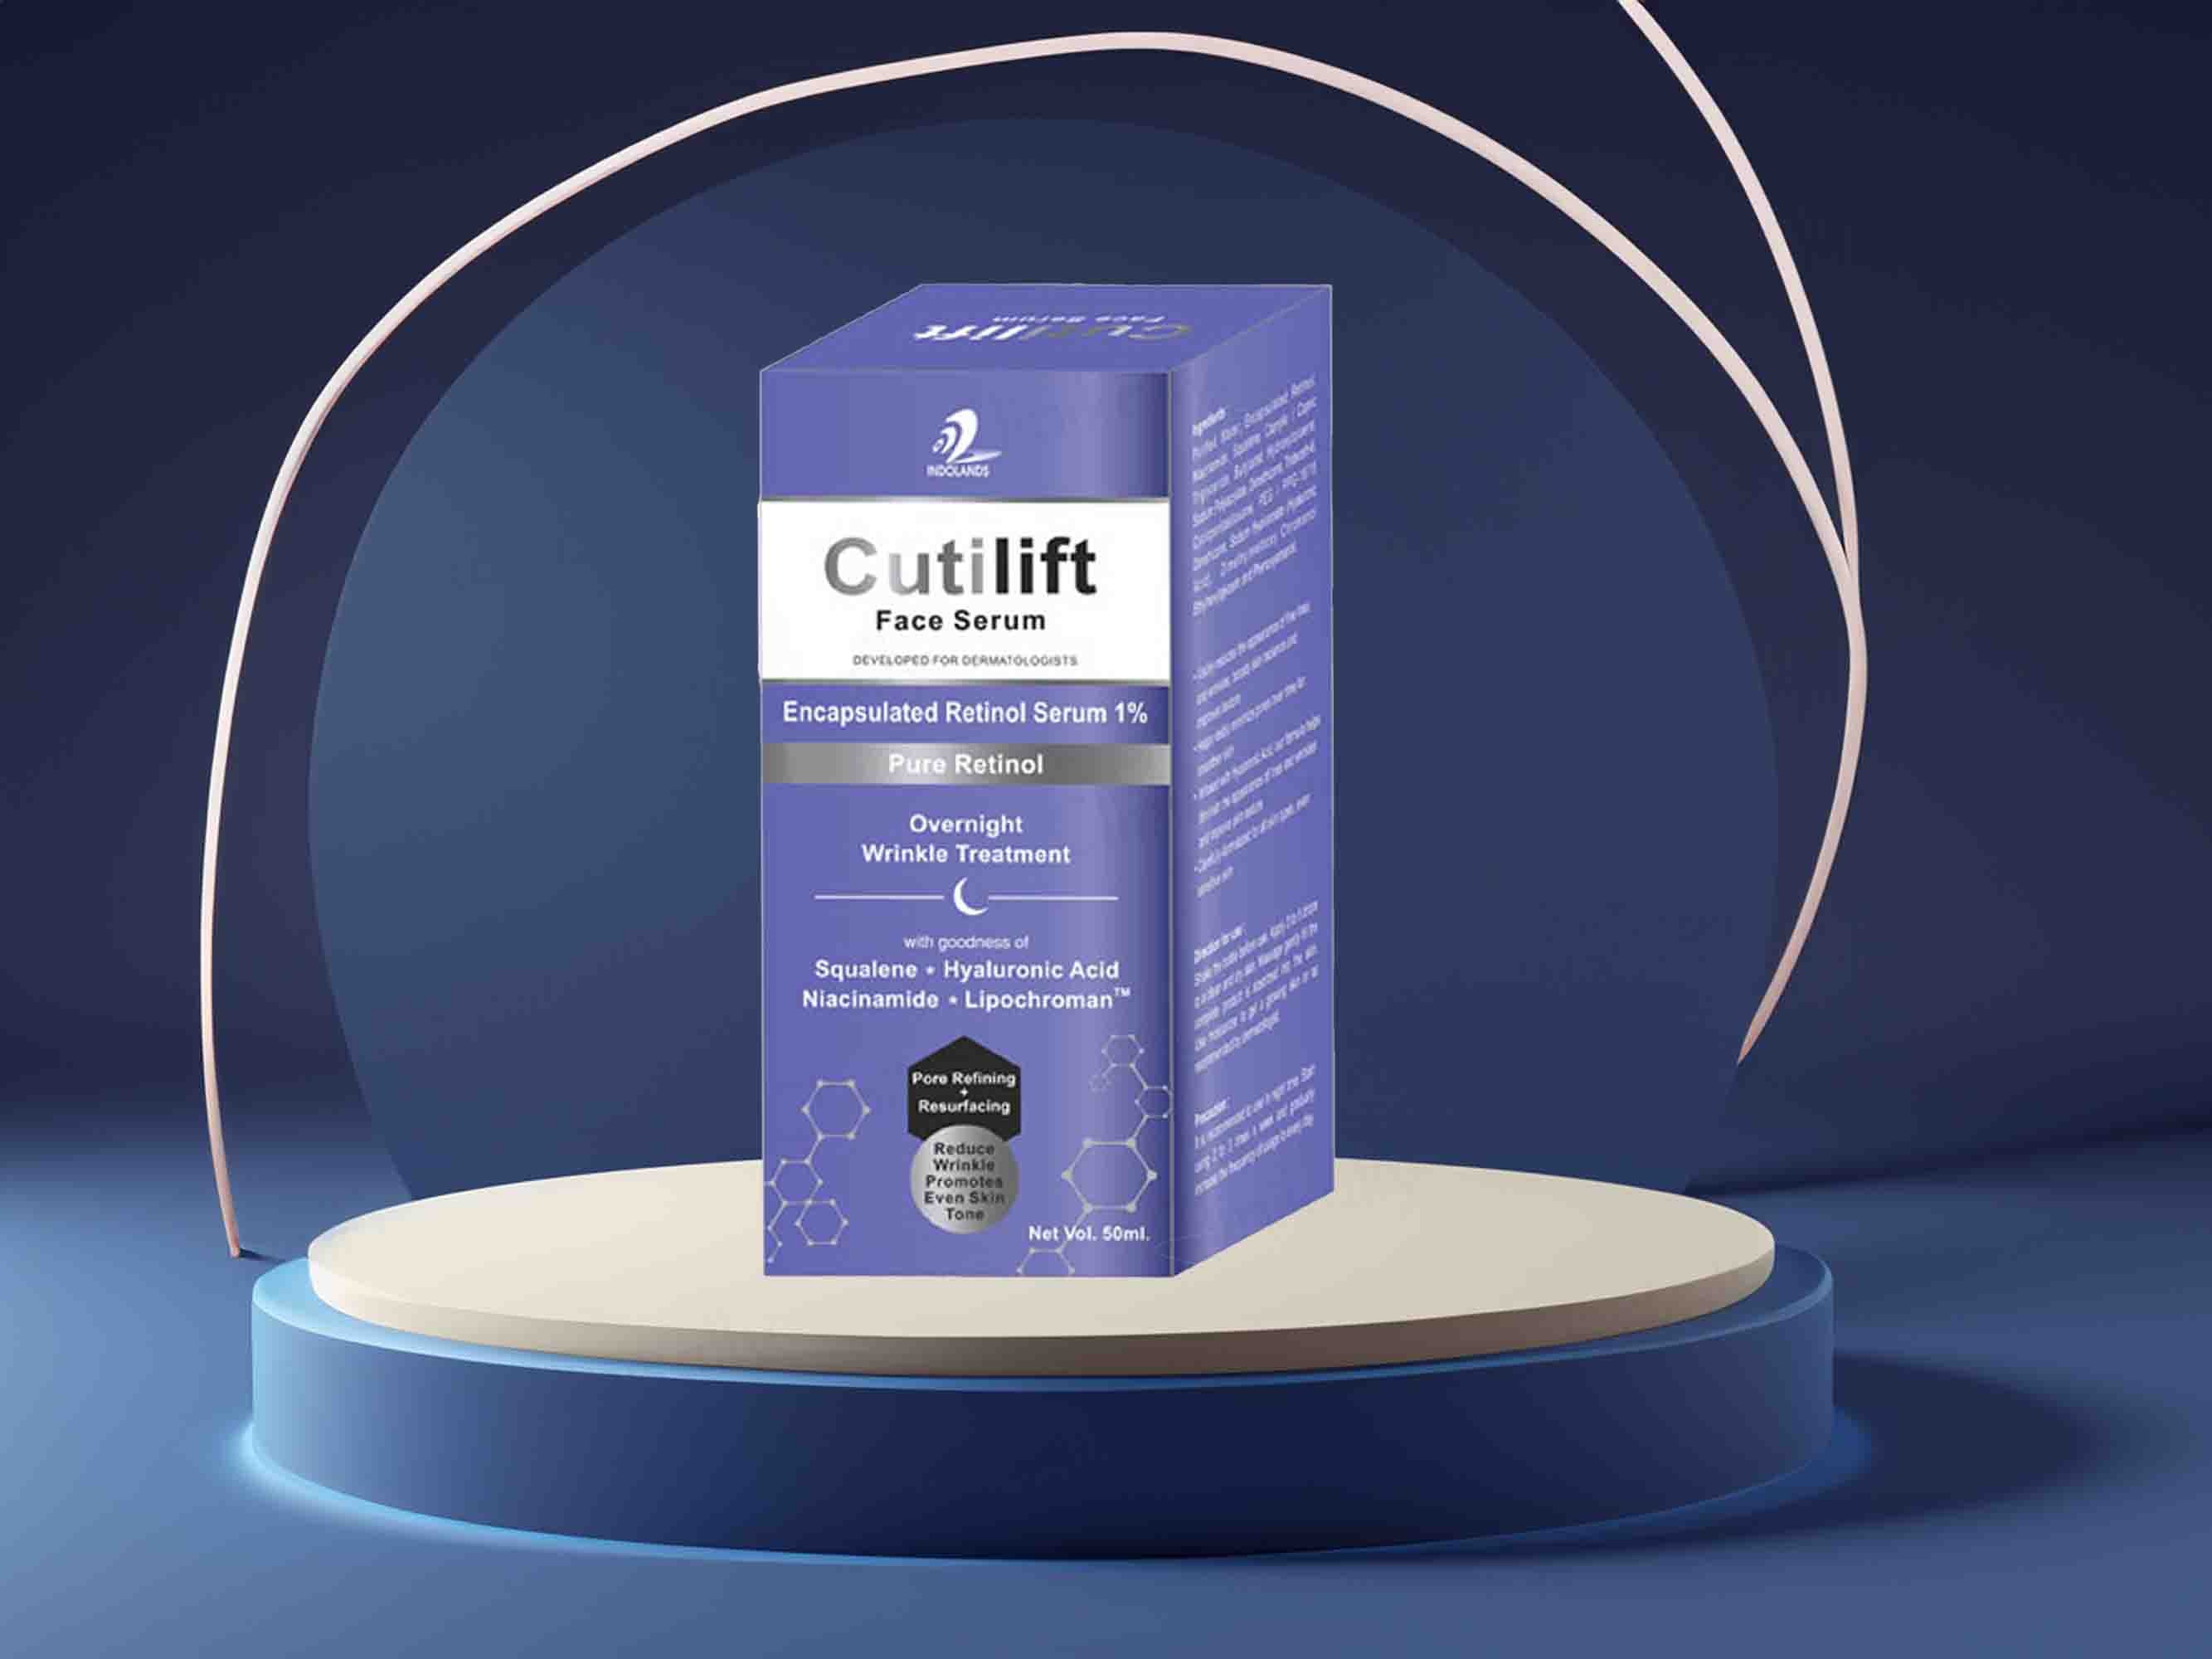 Cutilift Pure Retinol Face Serum